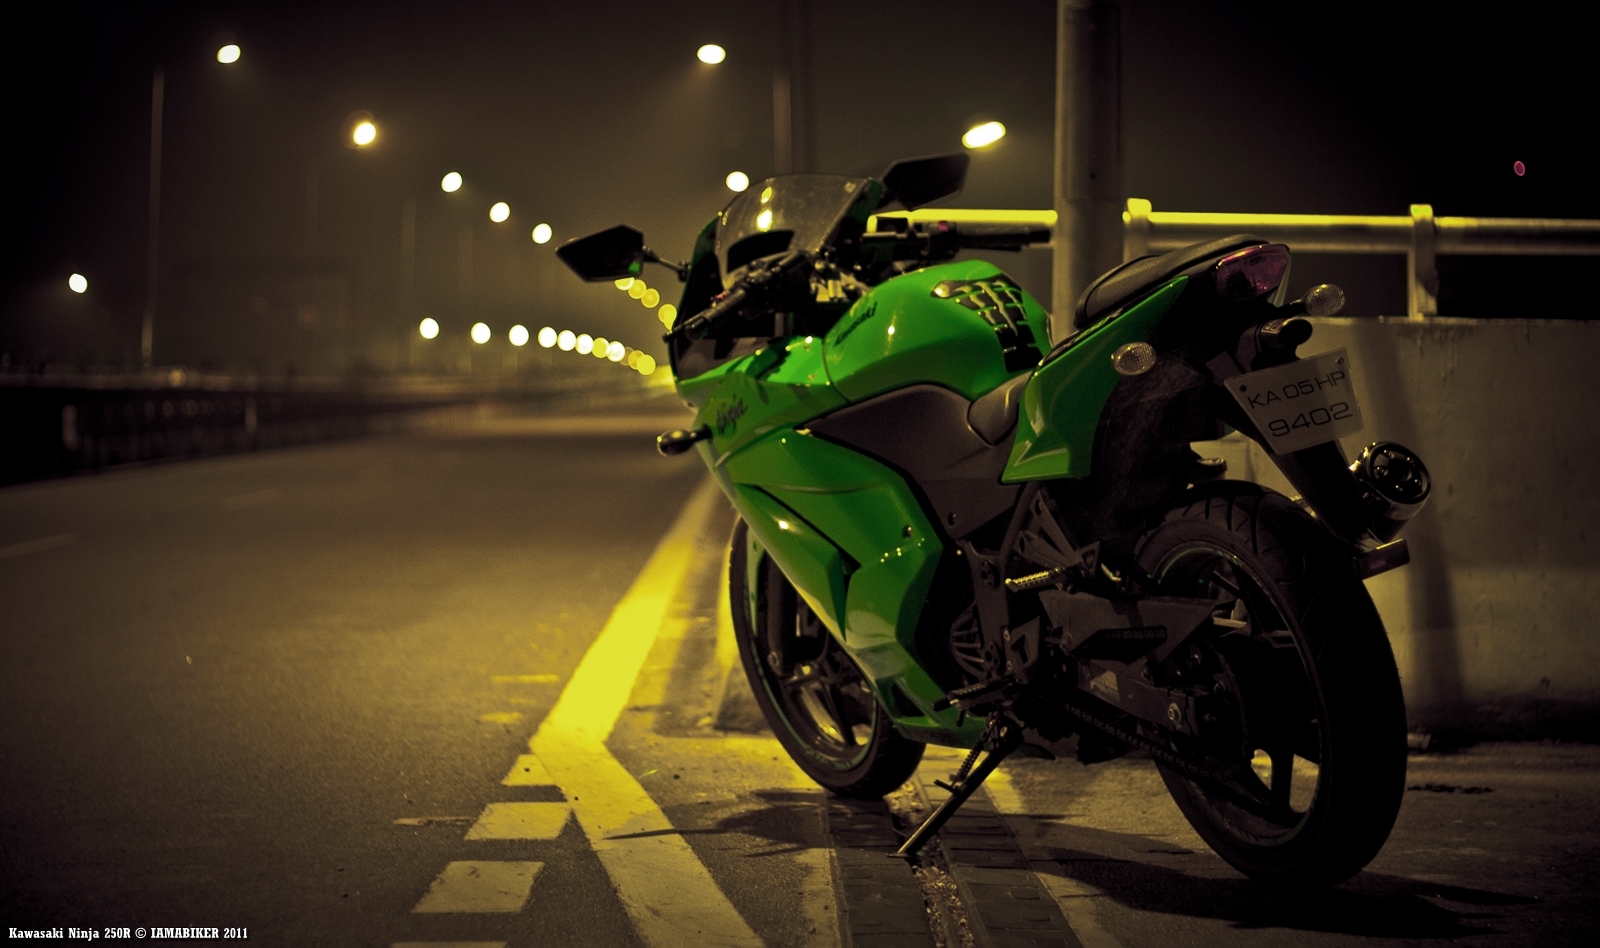 忍者バイクの壁紙,陸上車両,オートバイ,車両,緑,光